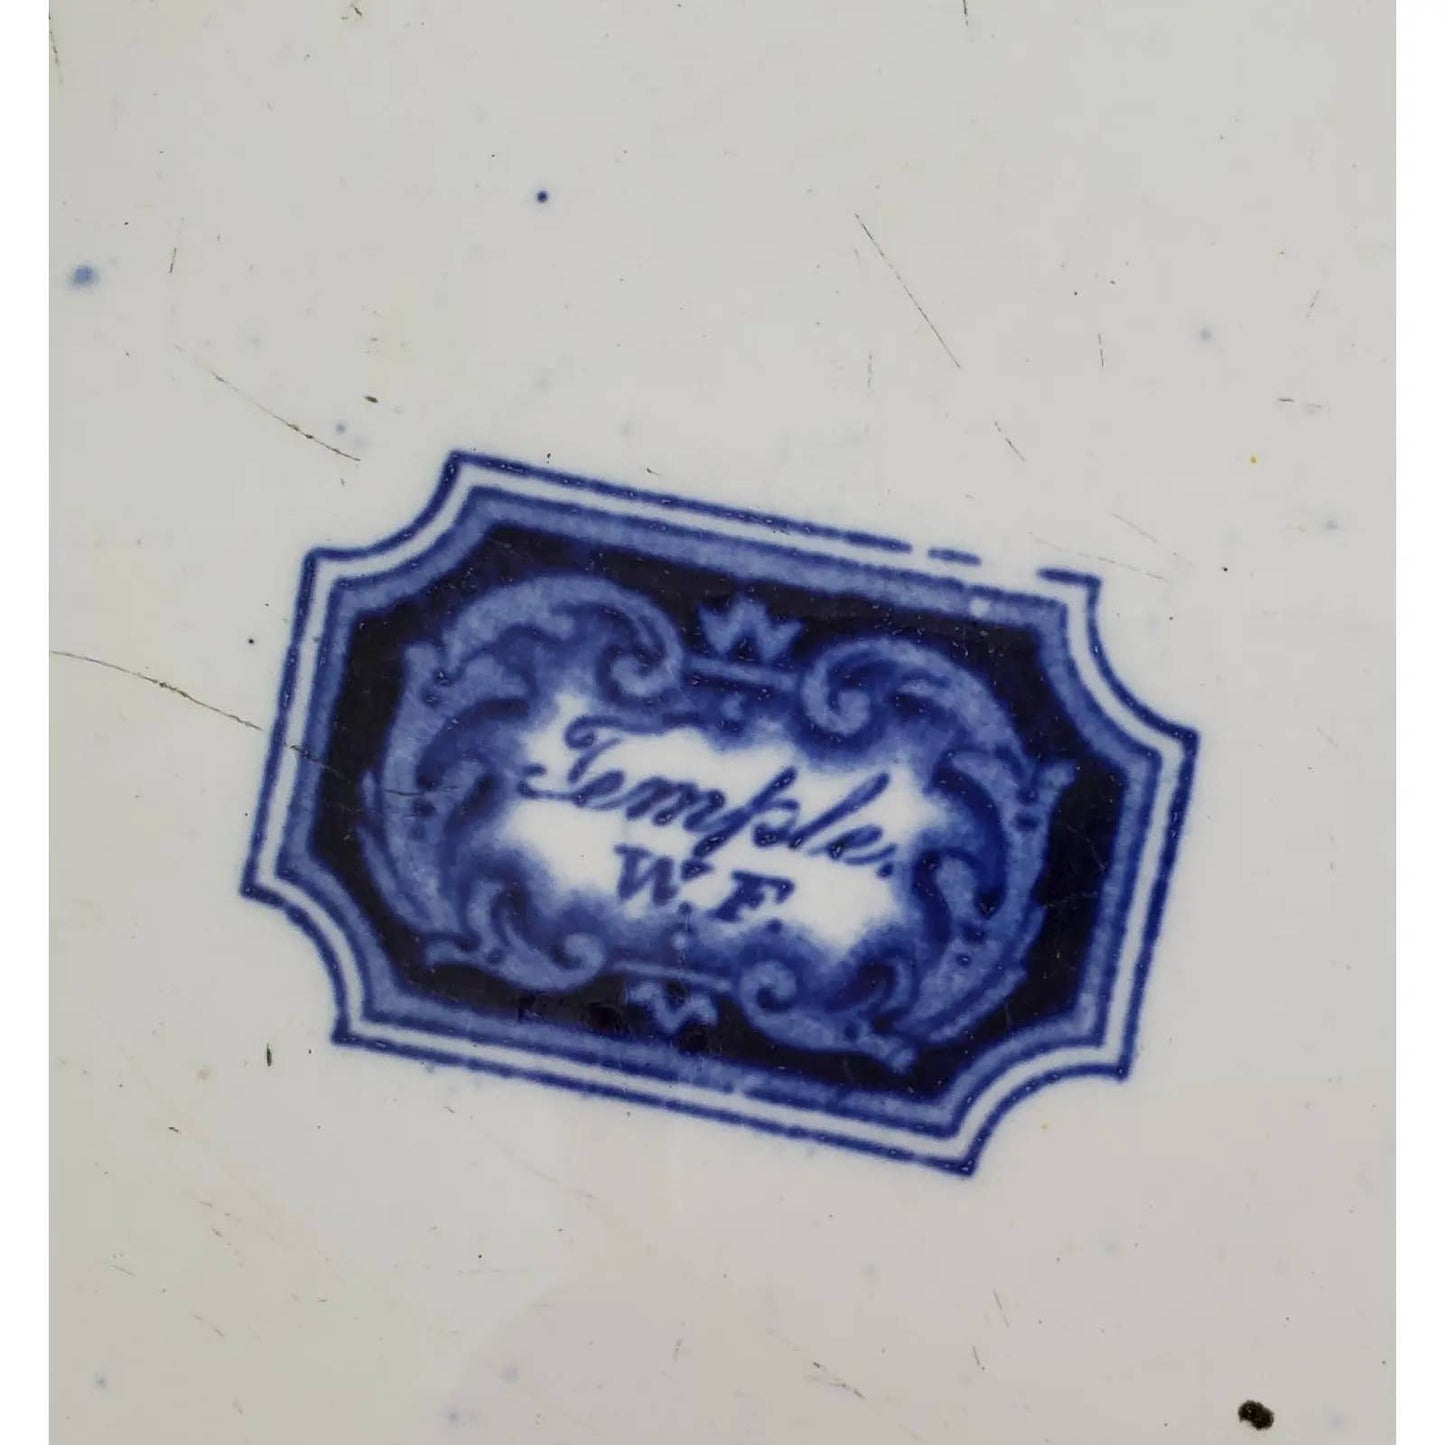 Large Antique Flow Blue Temple Pattern Platter